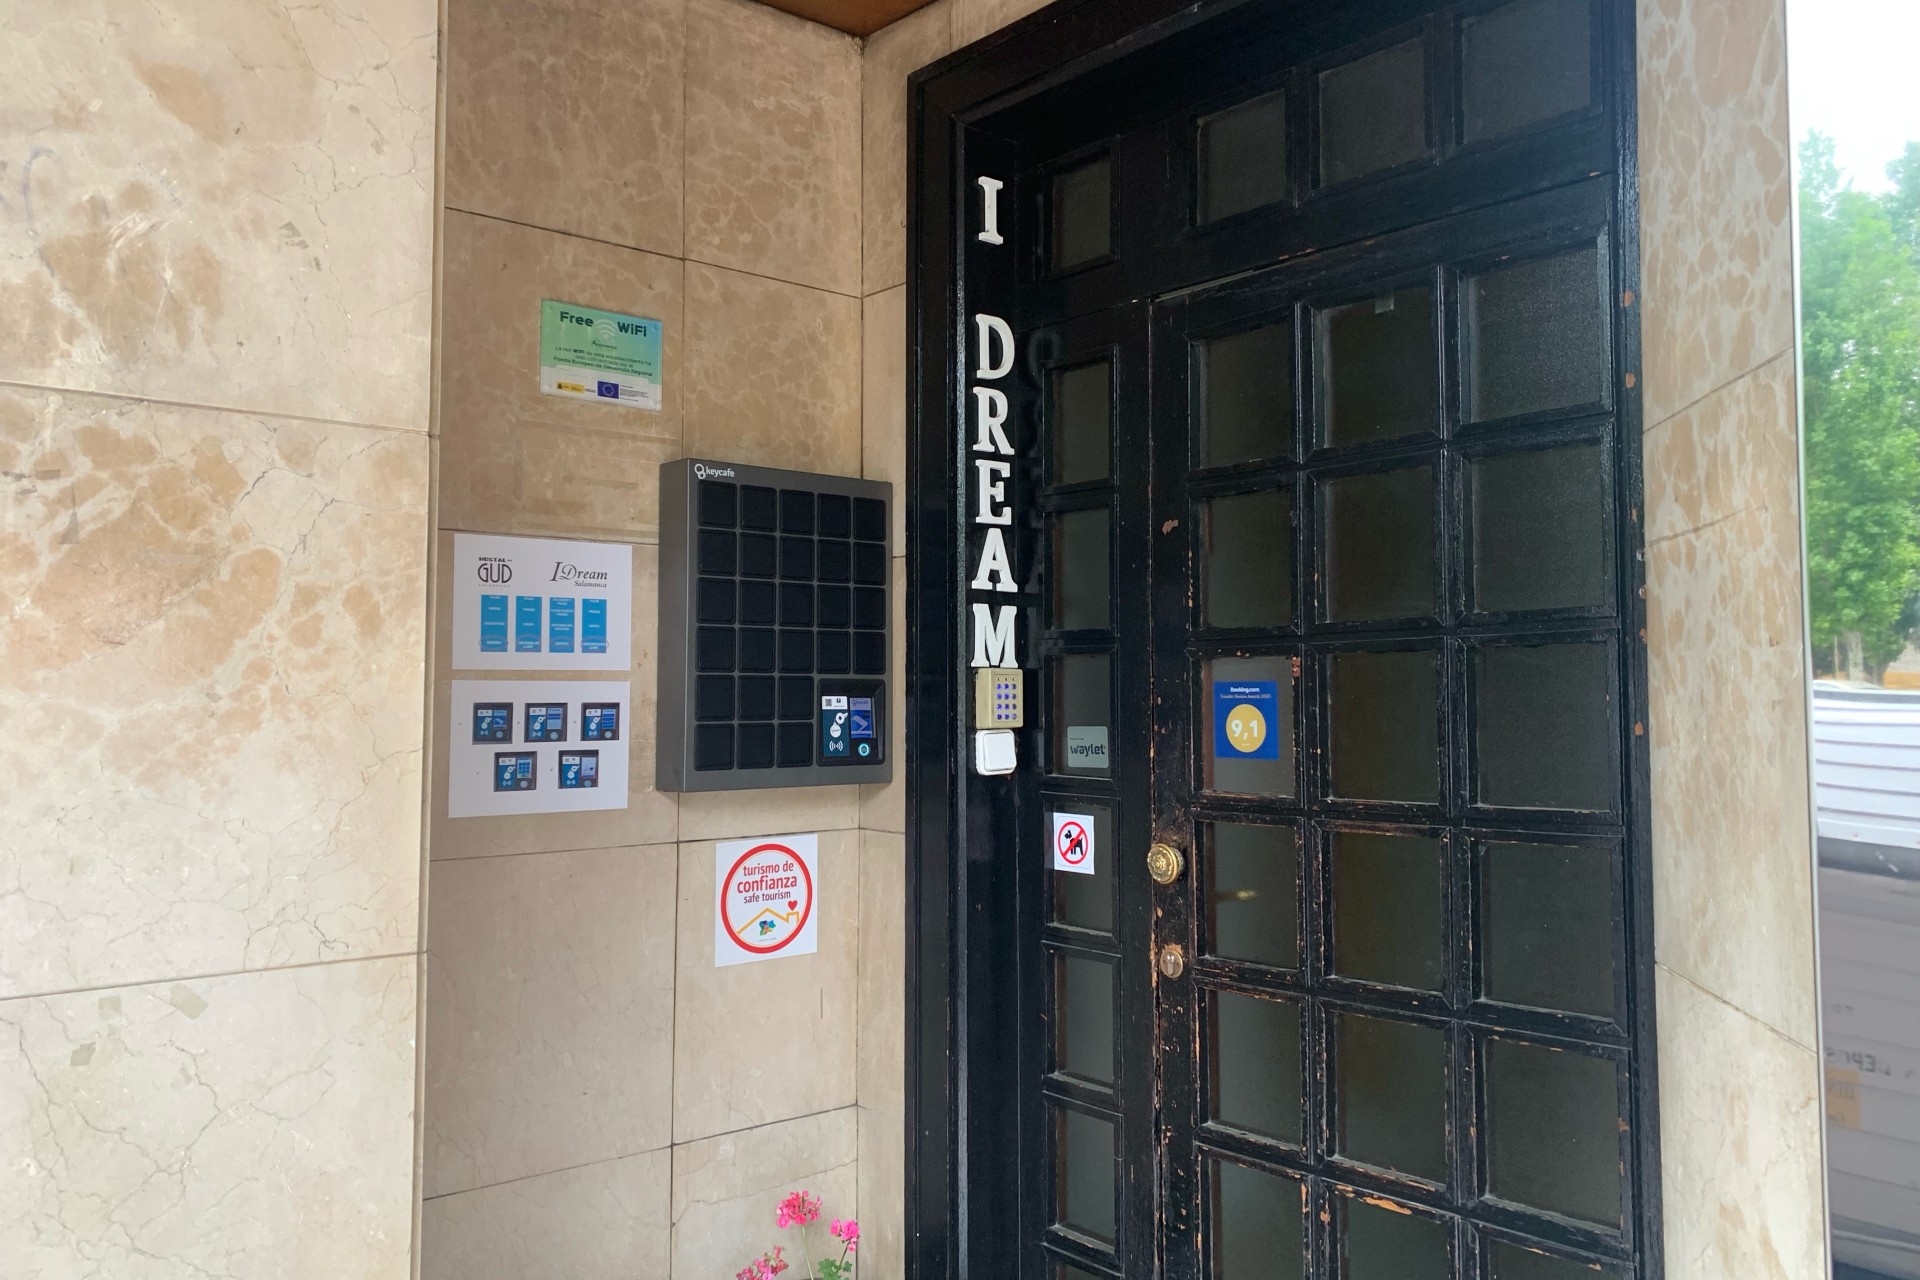 I Dream Hostel Salamanca pone en marcha la gestión de llaves con Keycafe